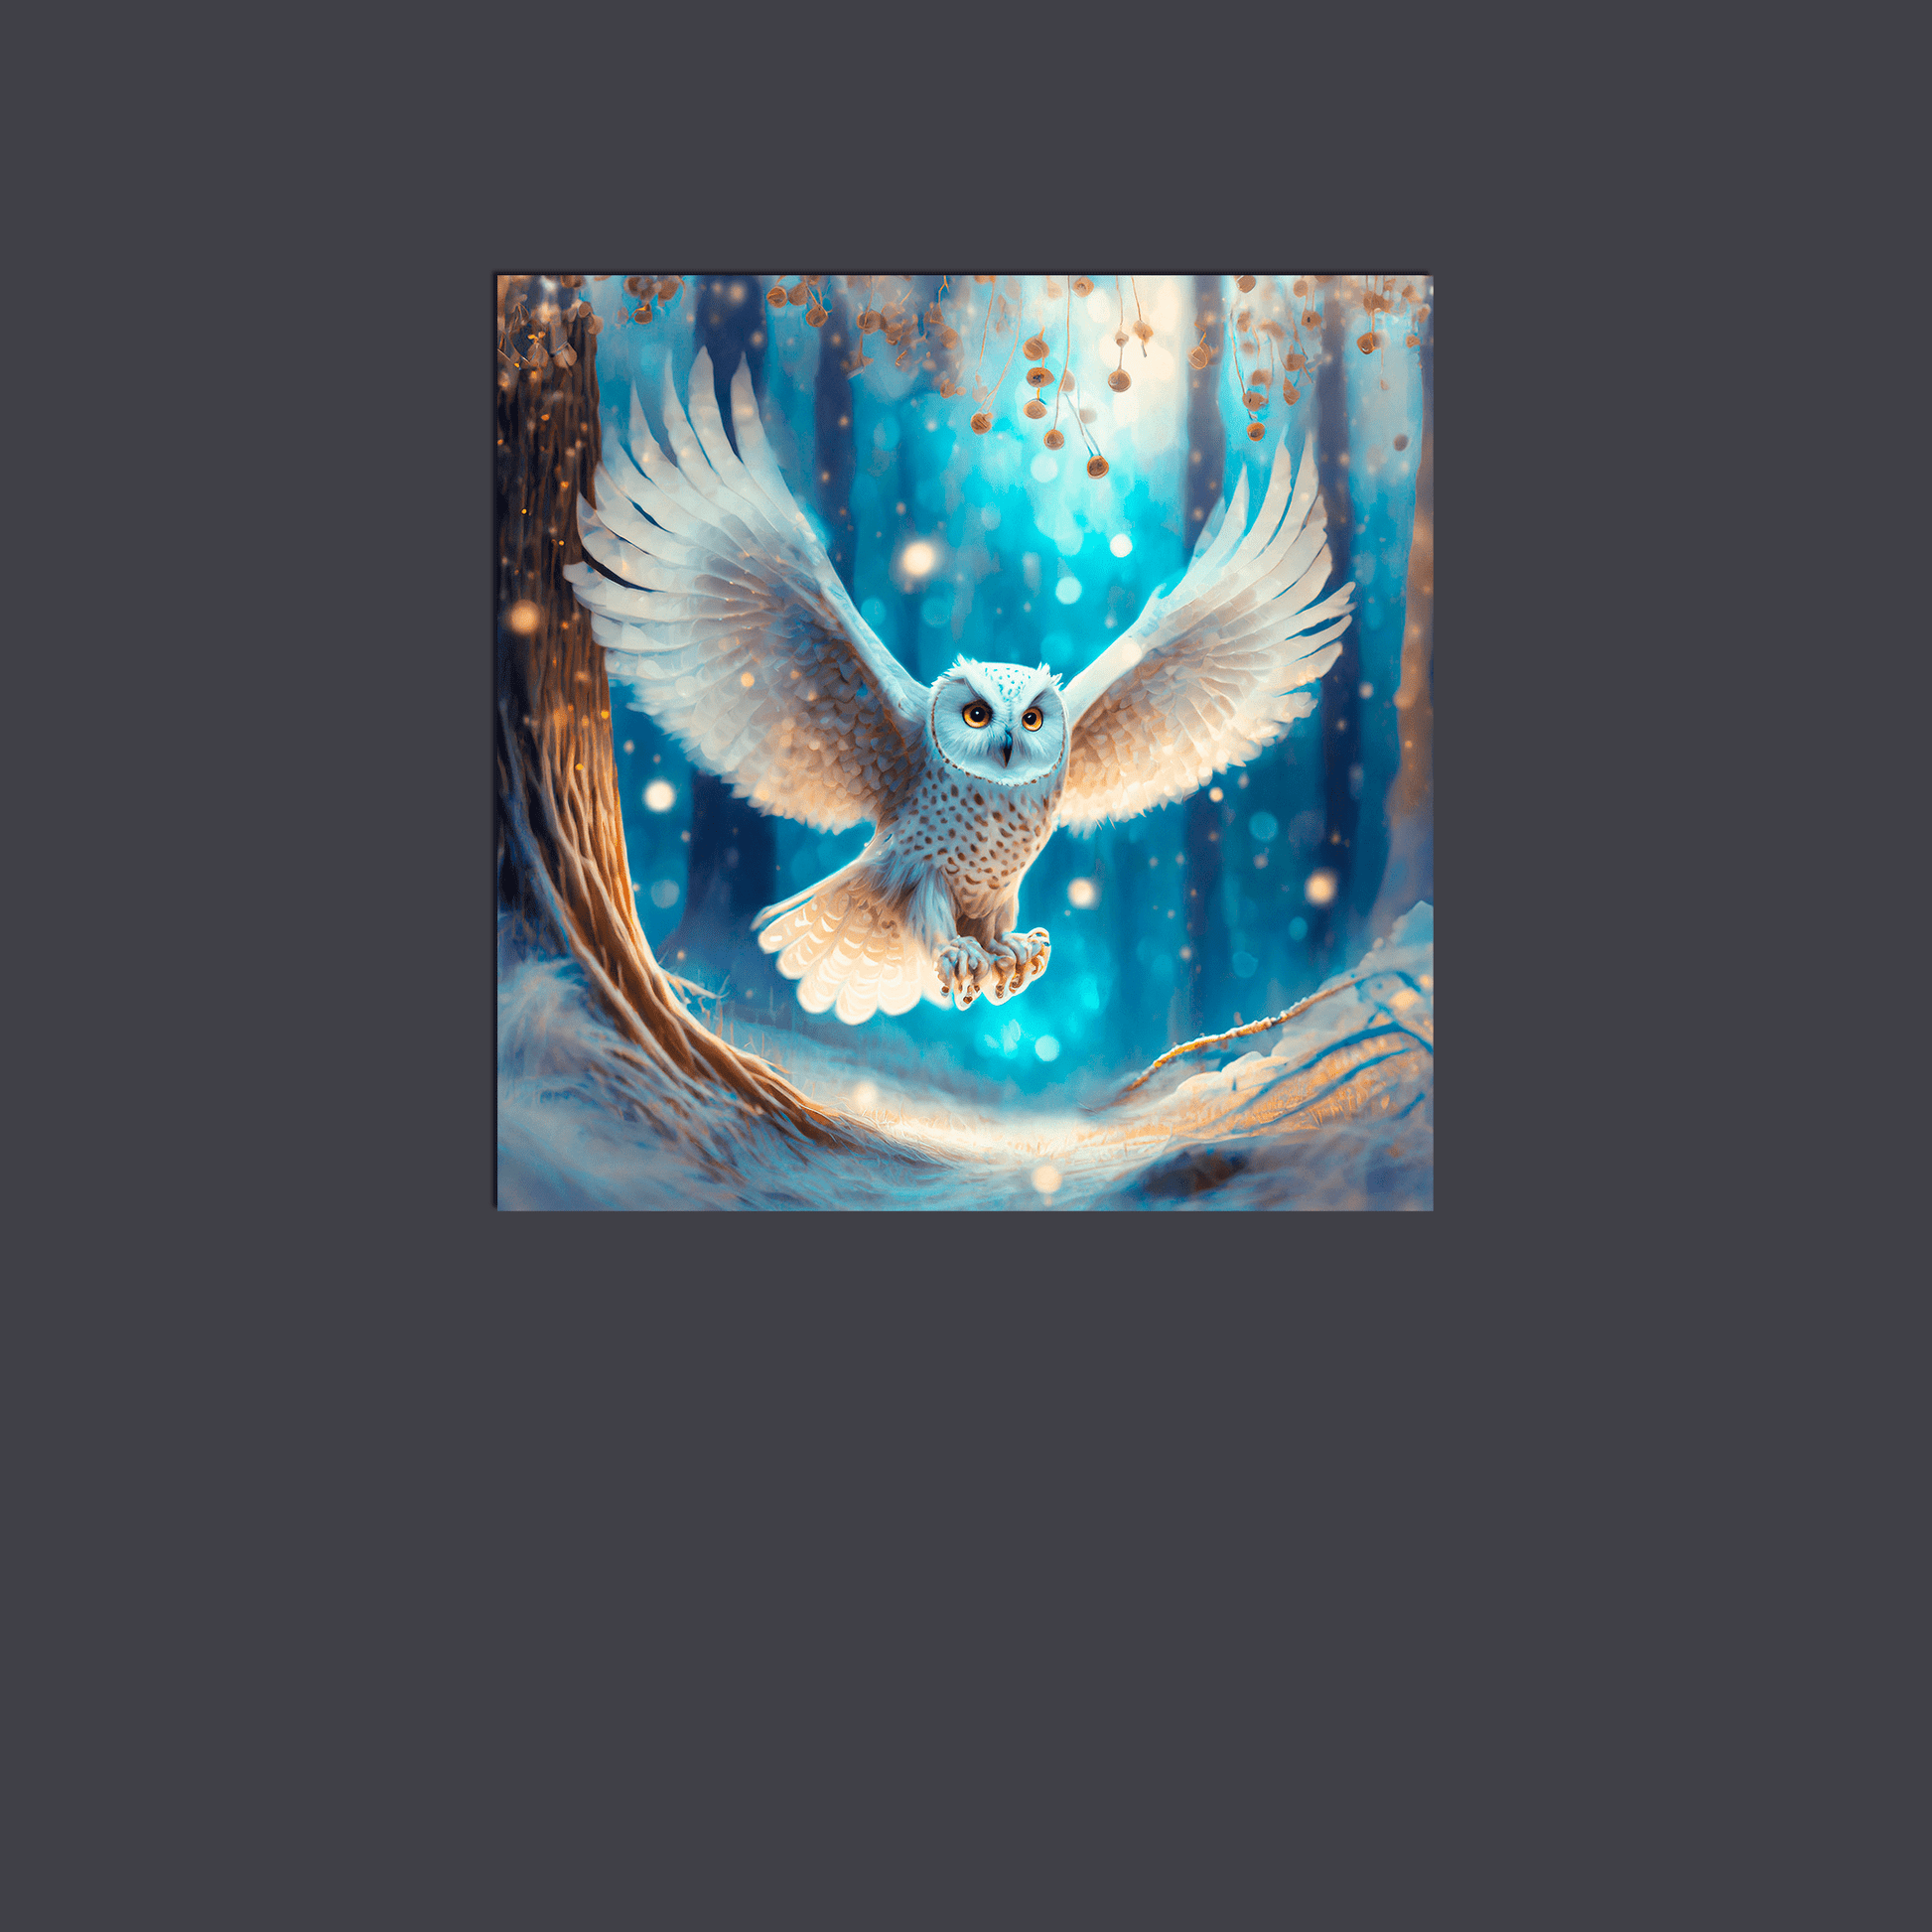 Snow Owl in Flight - Metal Poster - Premium Metal Poster